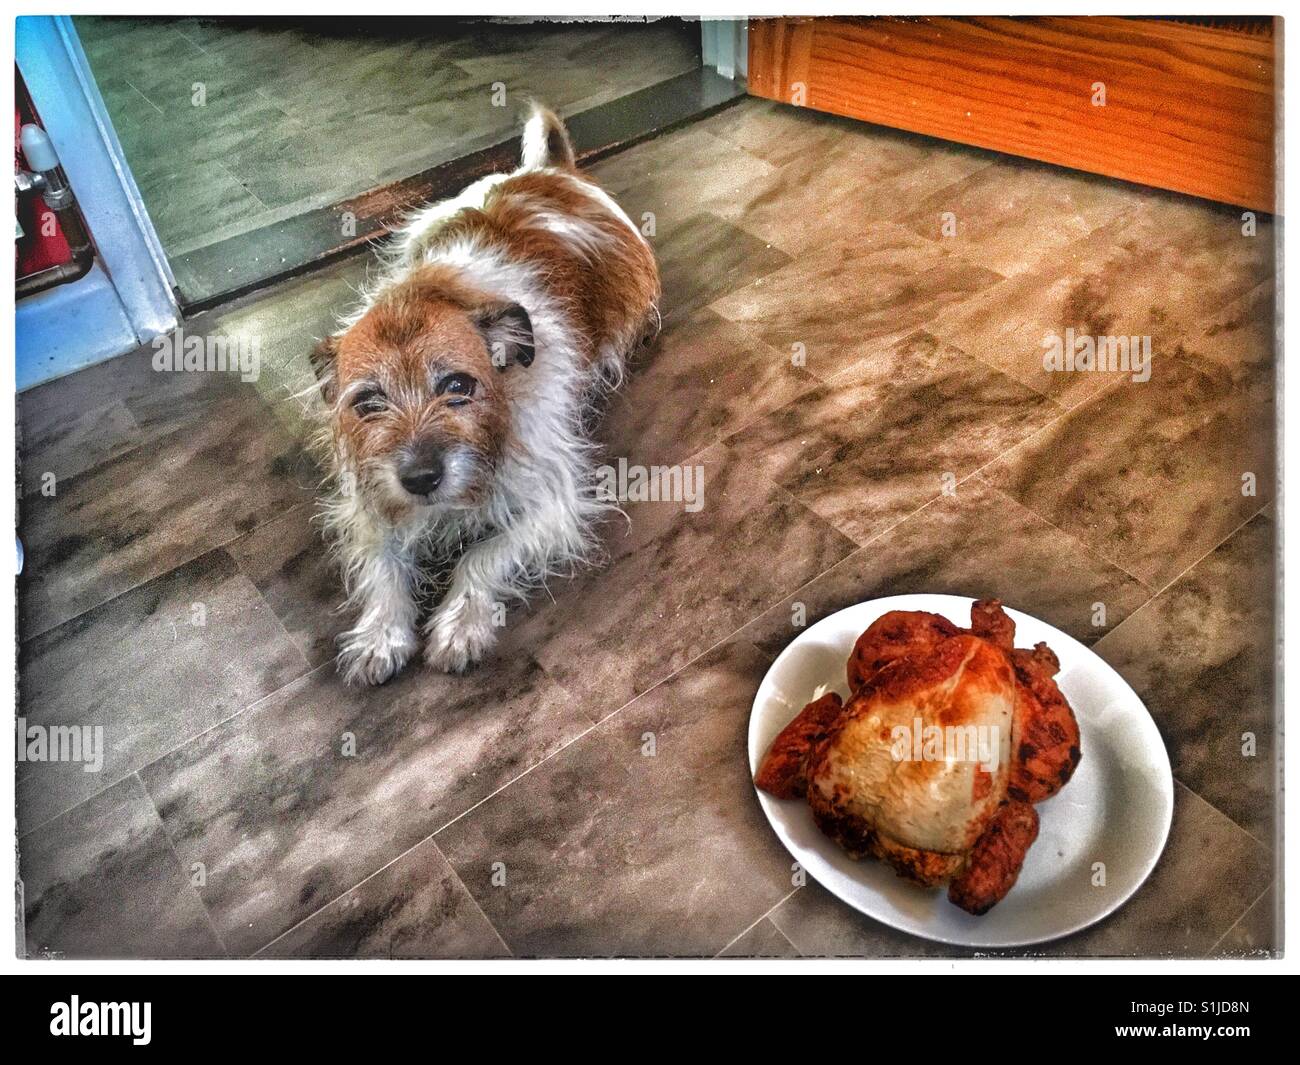 Gut ausgebildete Jack Russell mit ihrem Geburtstag Roast Chicken Dinner. Stockfoto